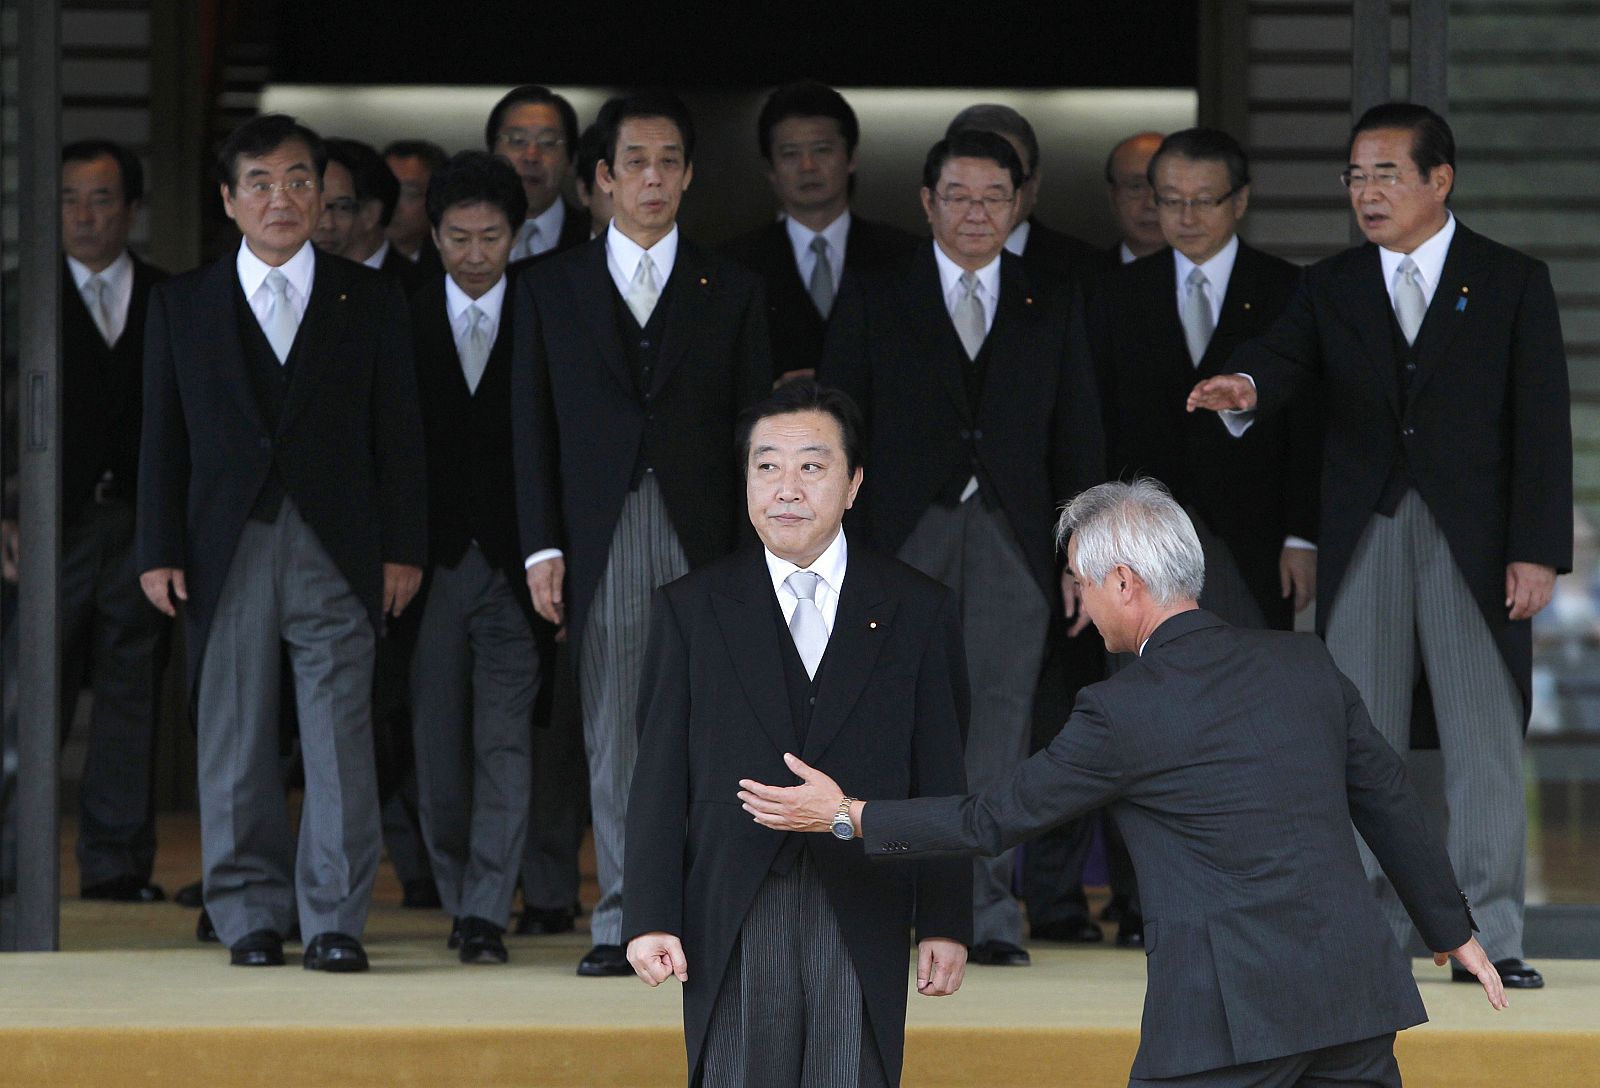 El nuevo primer ministro japonés, Yoshihiko Noda, presenta a los miembros de su gabinete